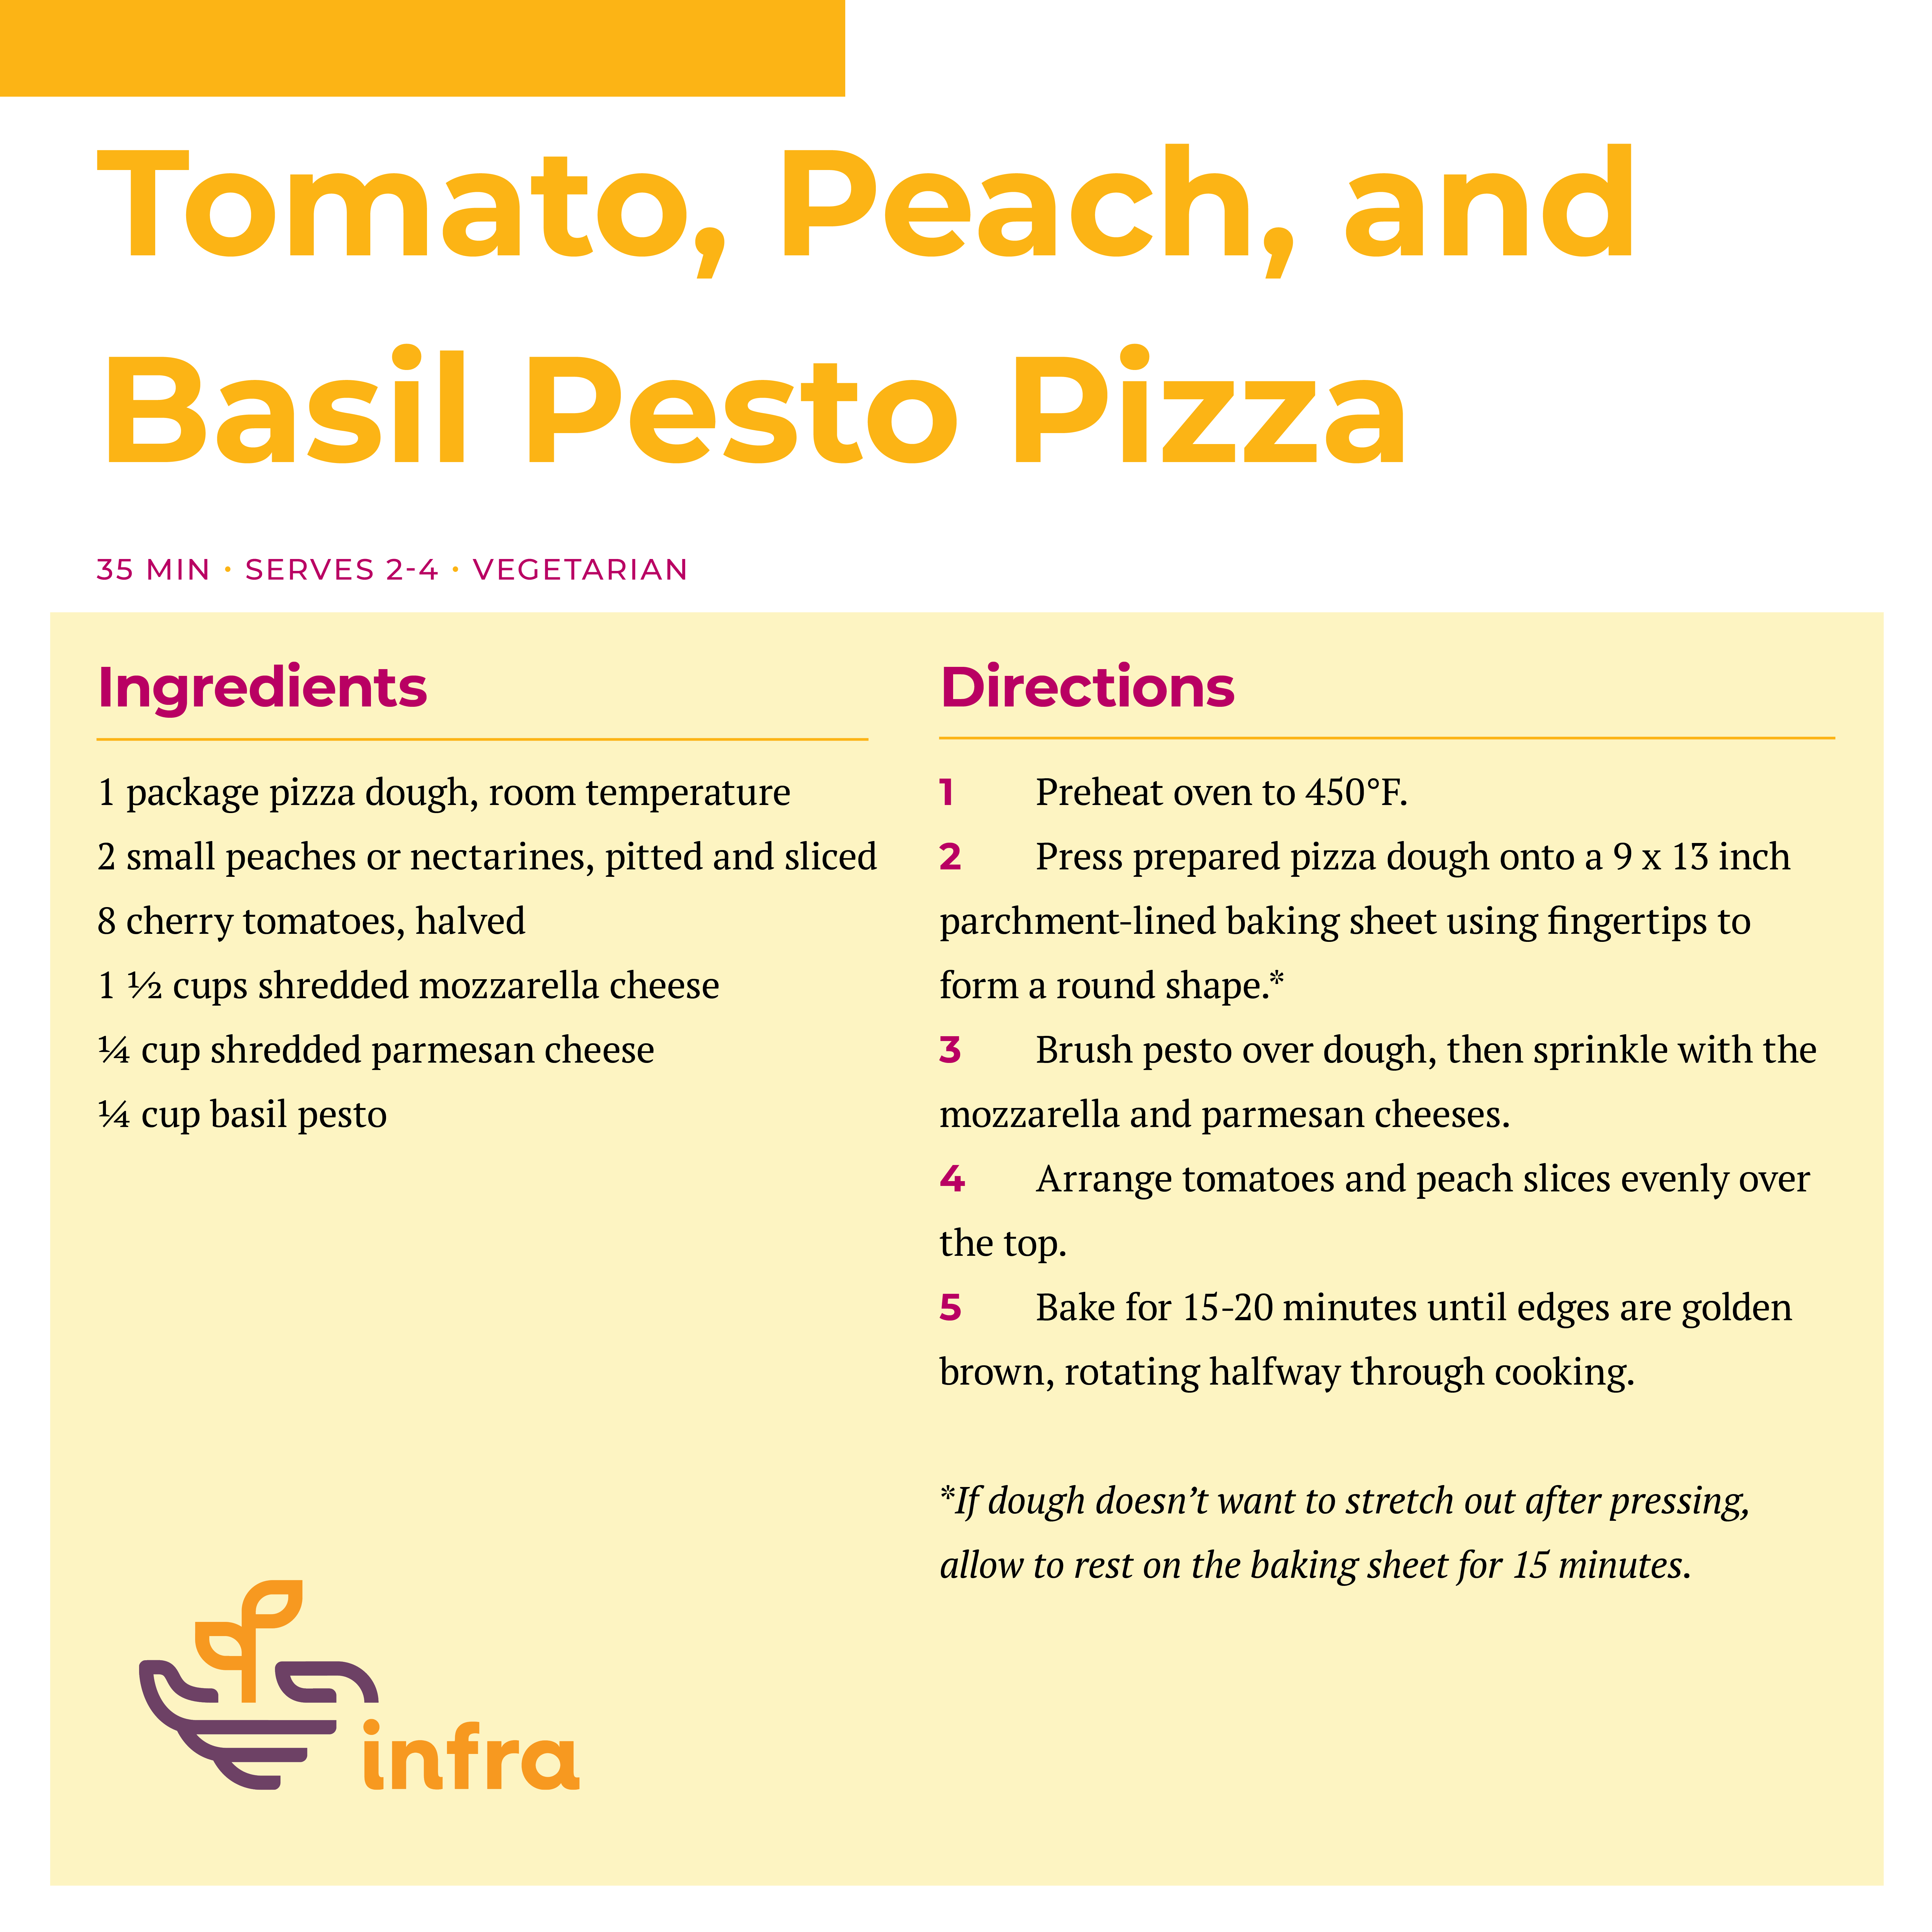 Tomato, Peach and Basil Pesto Pizza